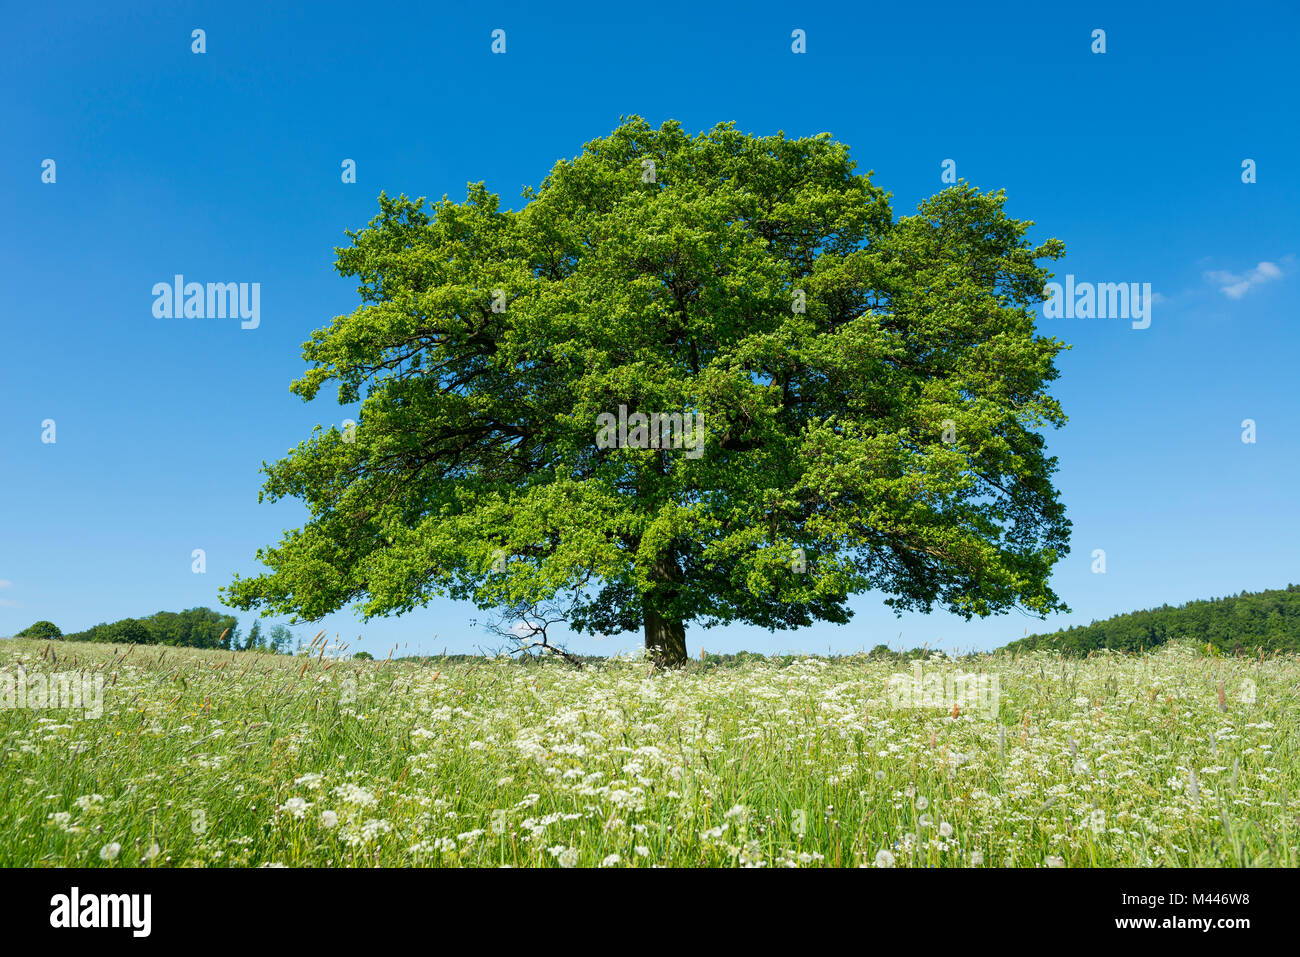 Vieux chêne pédonculé (Quercus robur) dans blooming meadow,arbre solitaire, Thuringe, Allemagne Banque D'Images